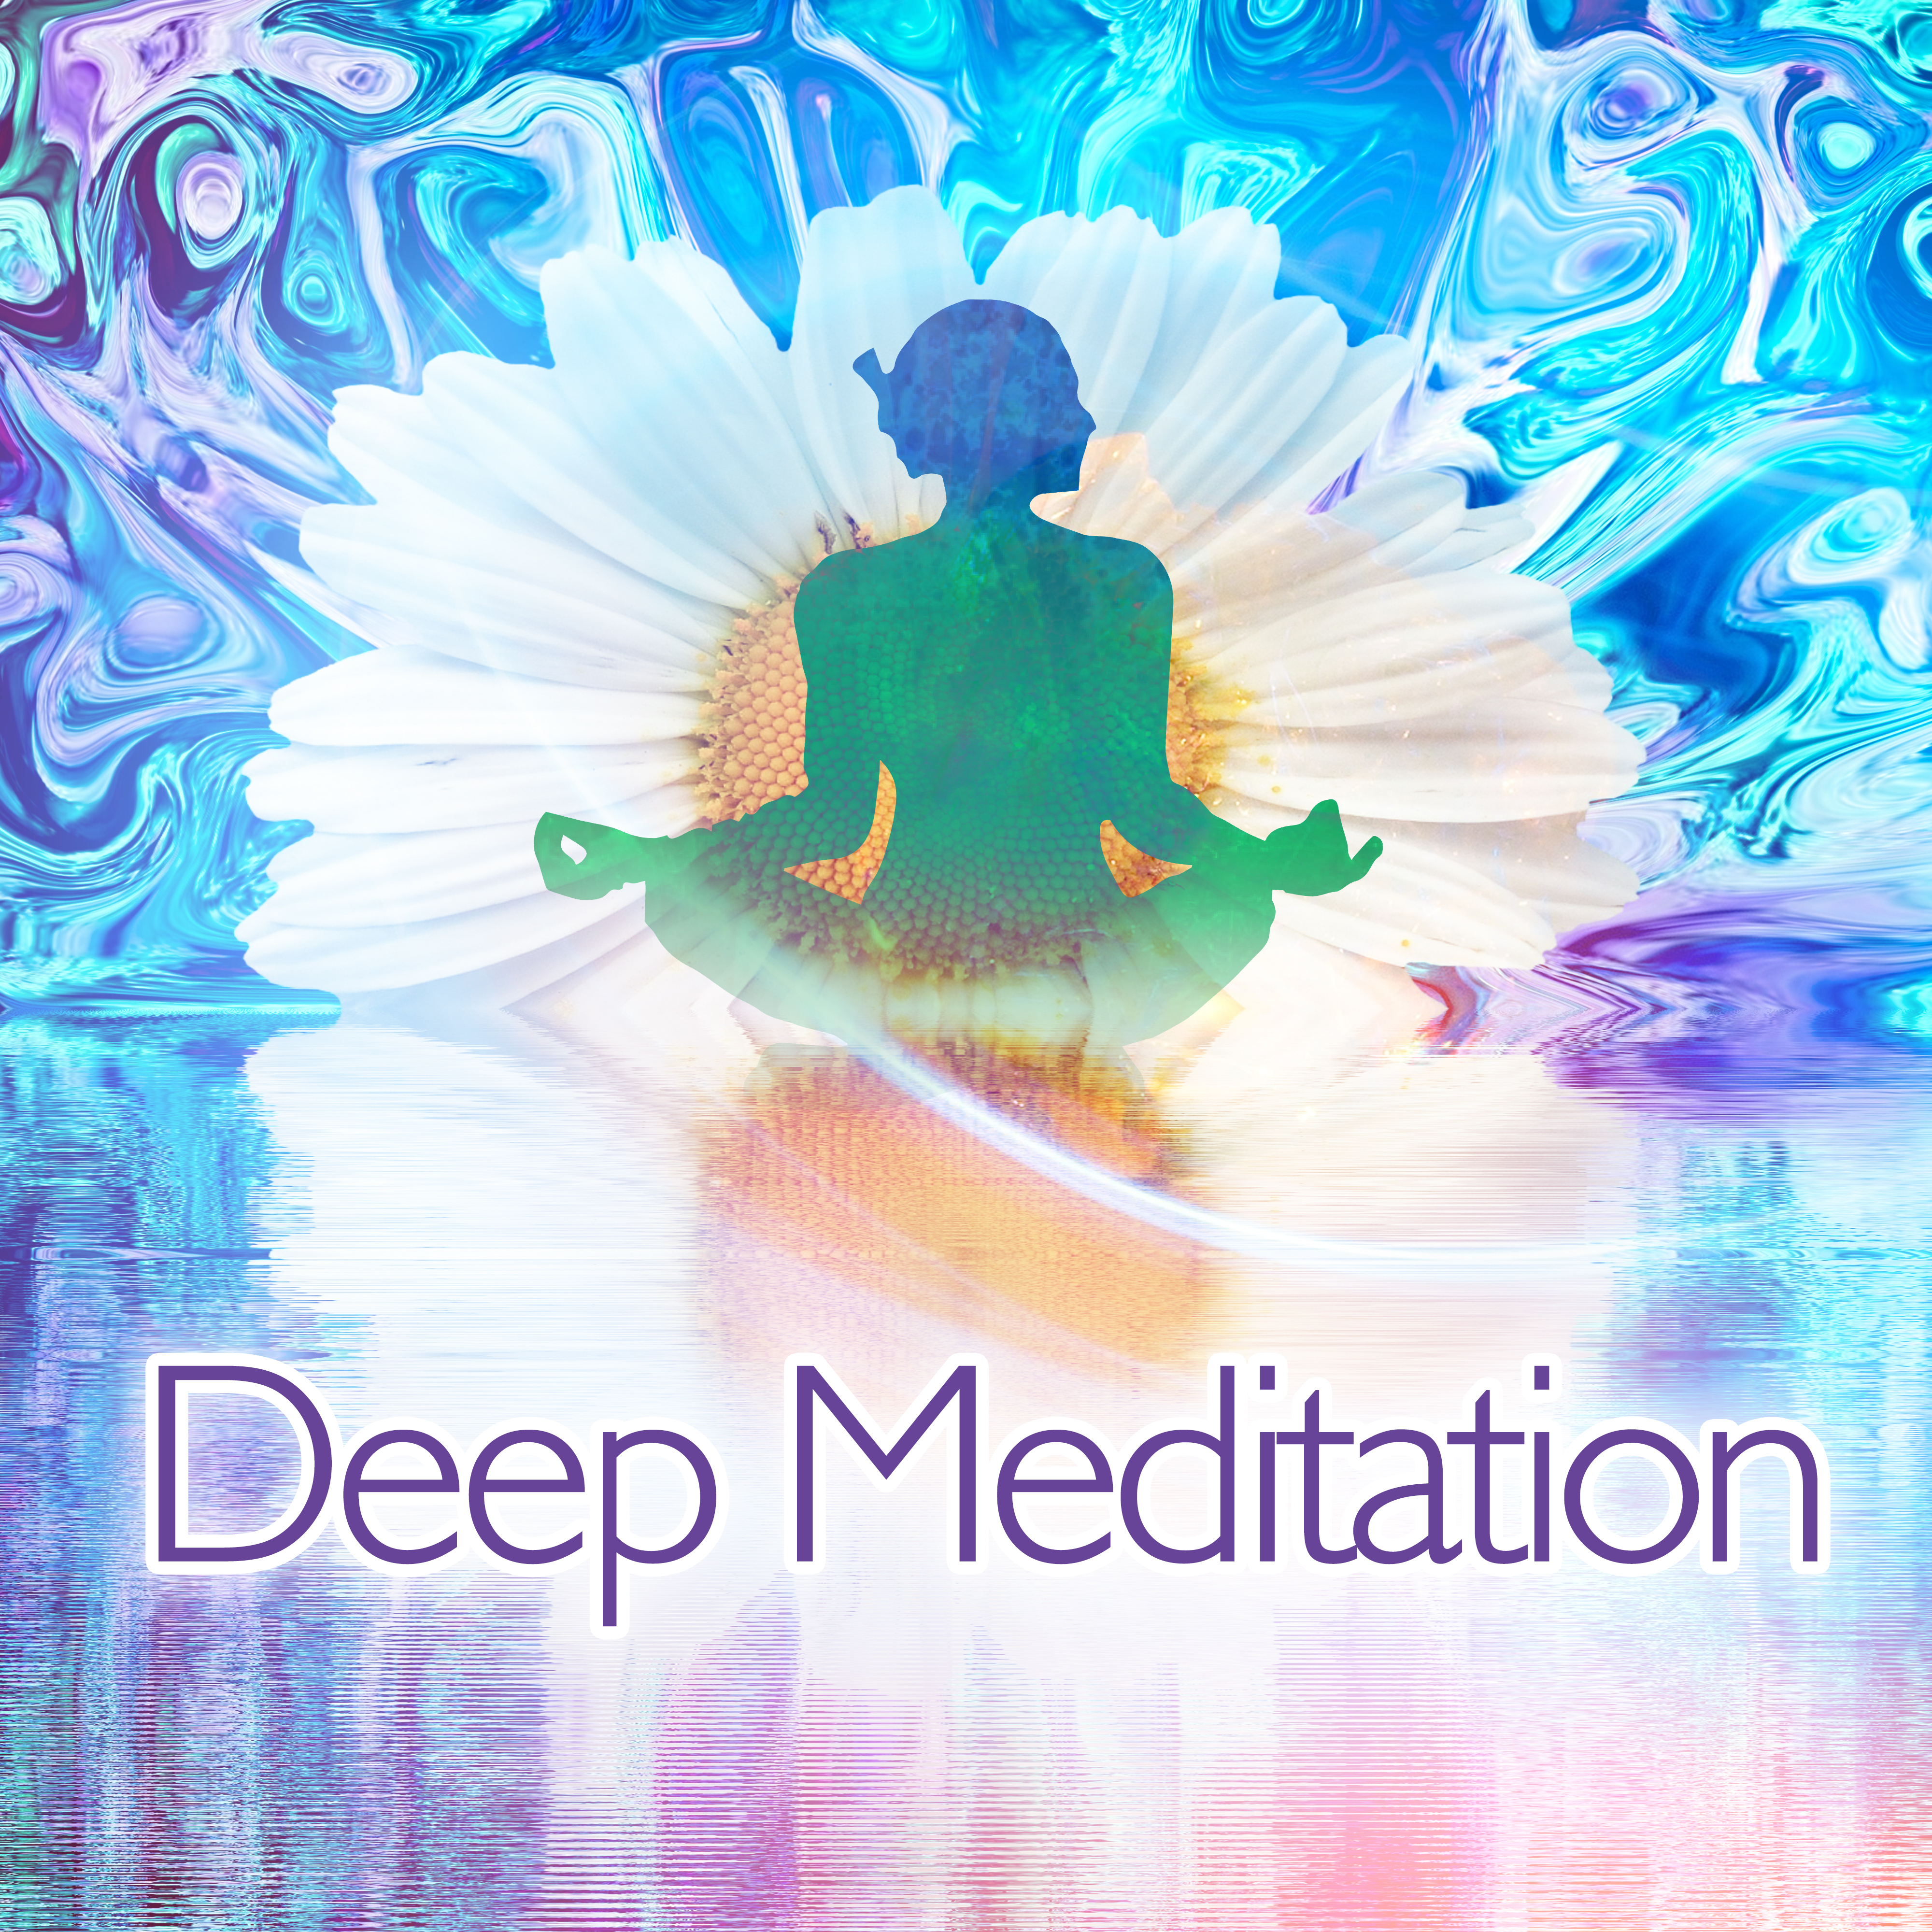 Deep Meditation - Deep Zen Meditation & Well Being, Balance Body, Mind & Soul